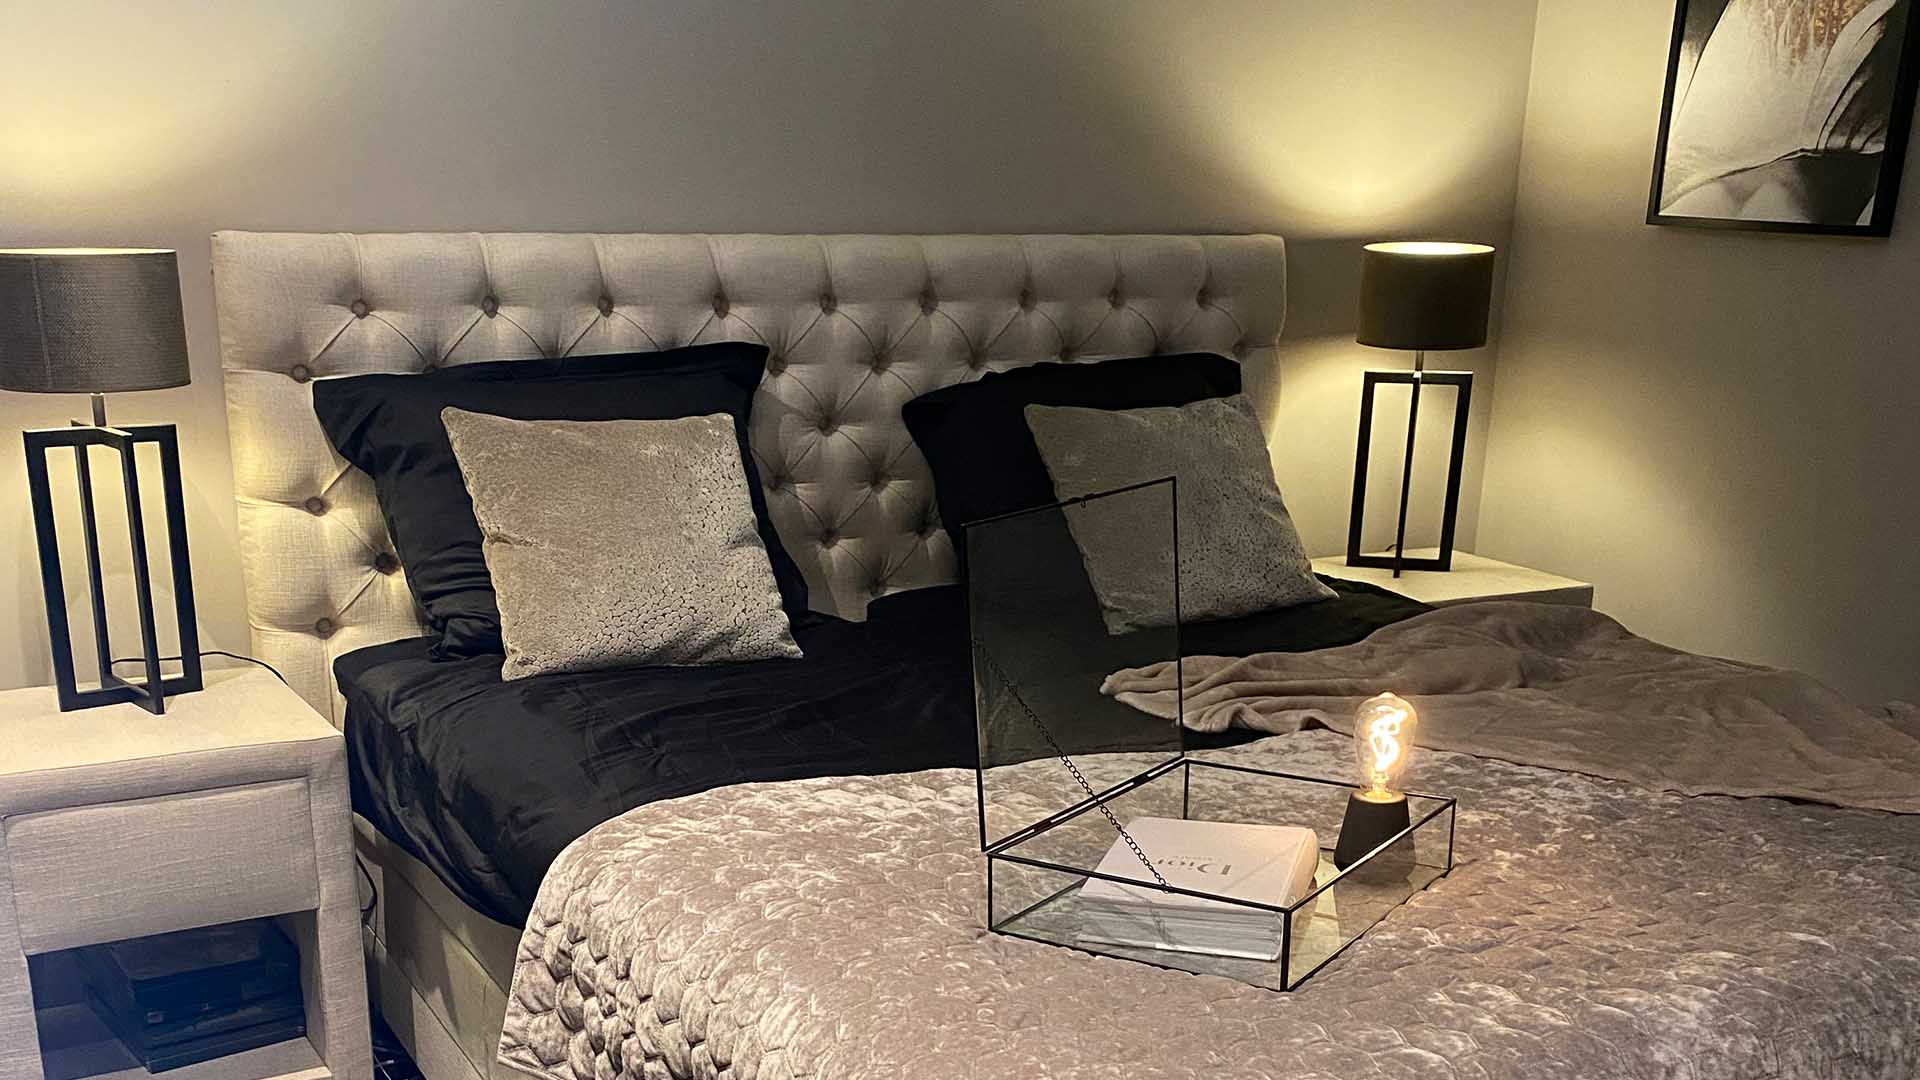 verder Rijpen metaal Trend alert: slaapkamer in Hotel Chic stijl